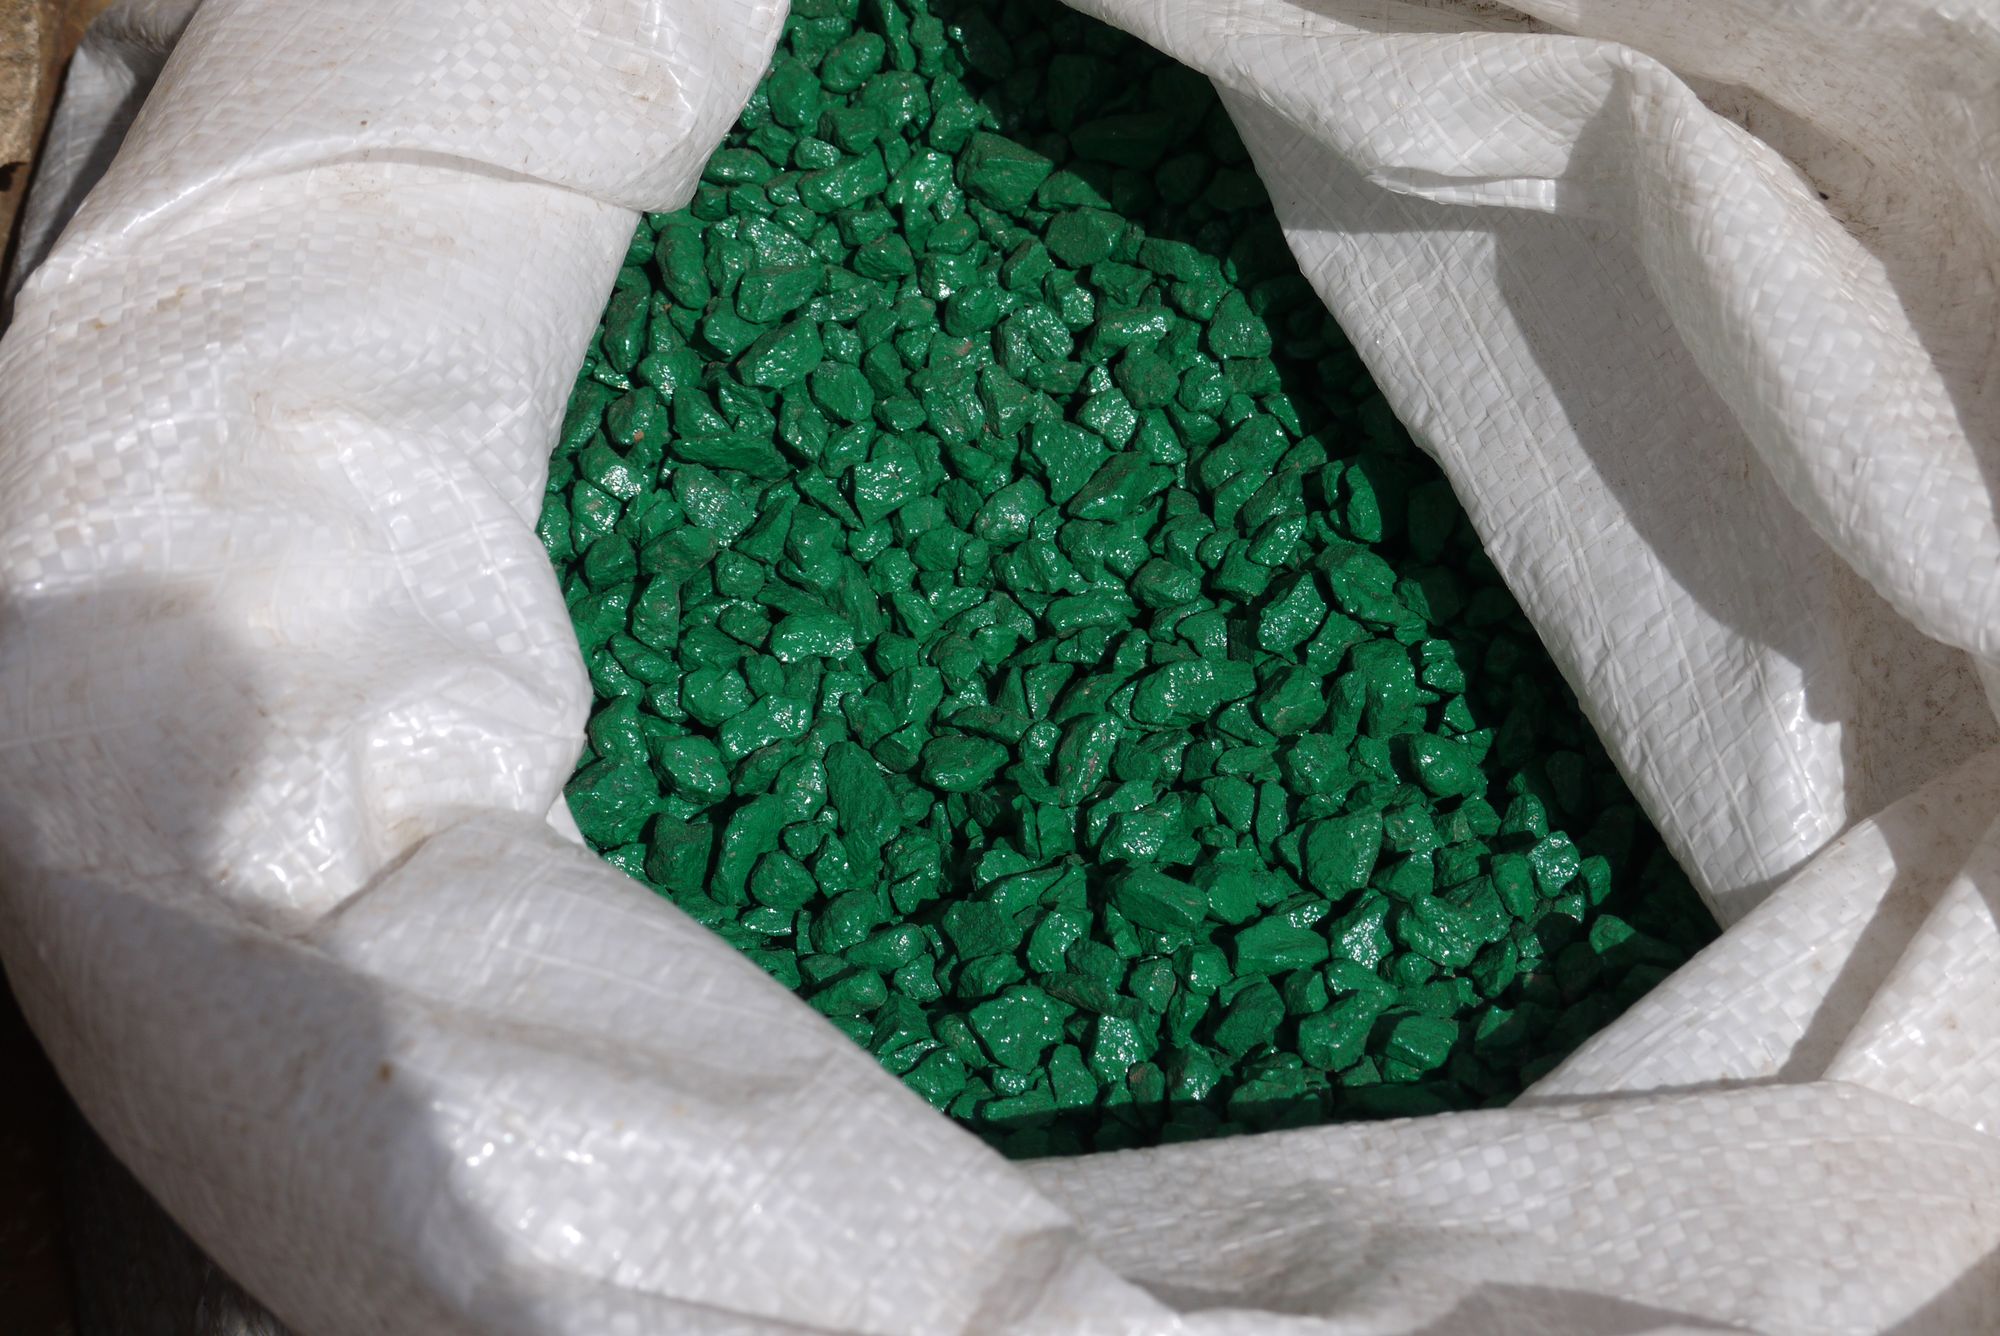 Как выглядит наркотик зеленого цвета хорхе сервантес высший пилотаж выращивания марихуаны скачать